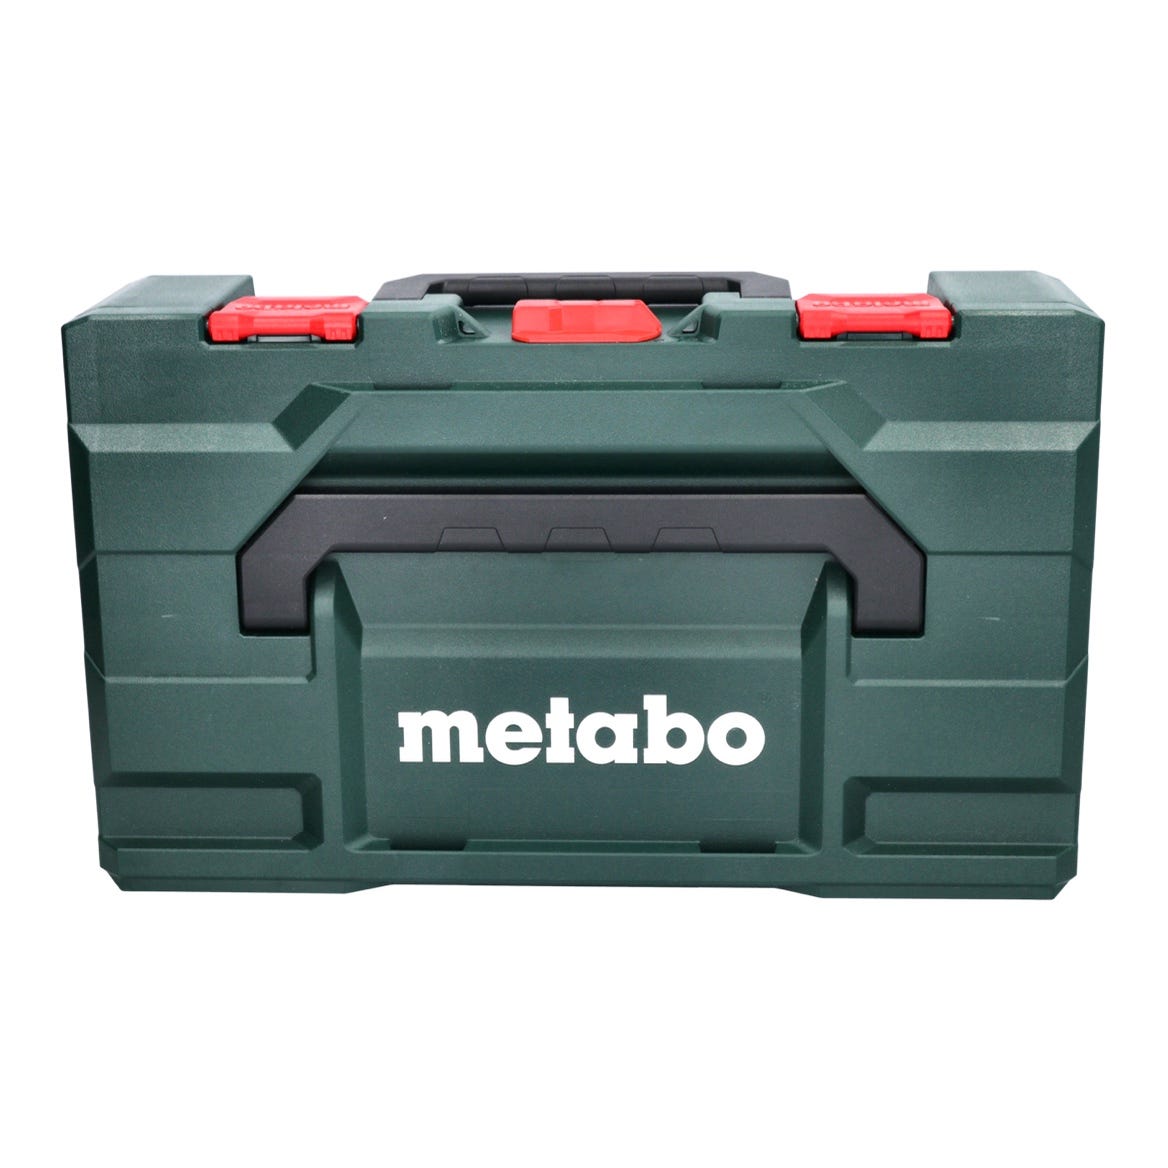 Metabo KH 18 LTX 24 Marteau sans fil 2,1J SDS plus 18V + 1x Batterie 4,0Ah + Chargeur + Coffret MetaBOX 2